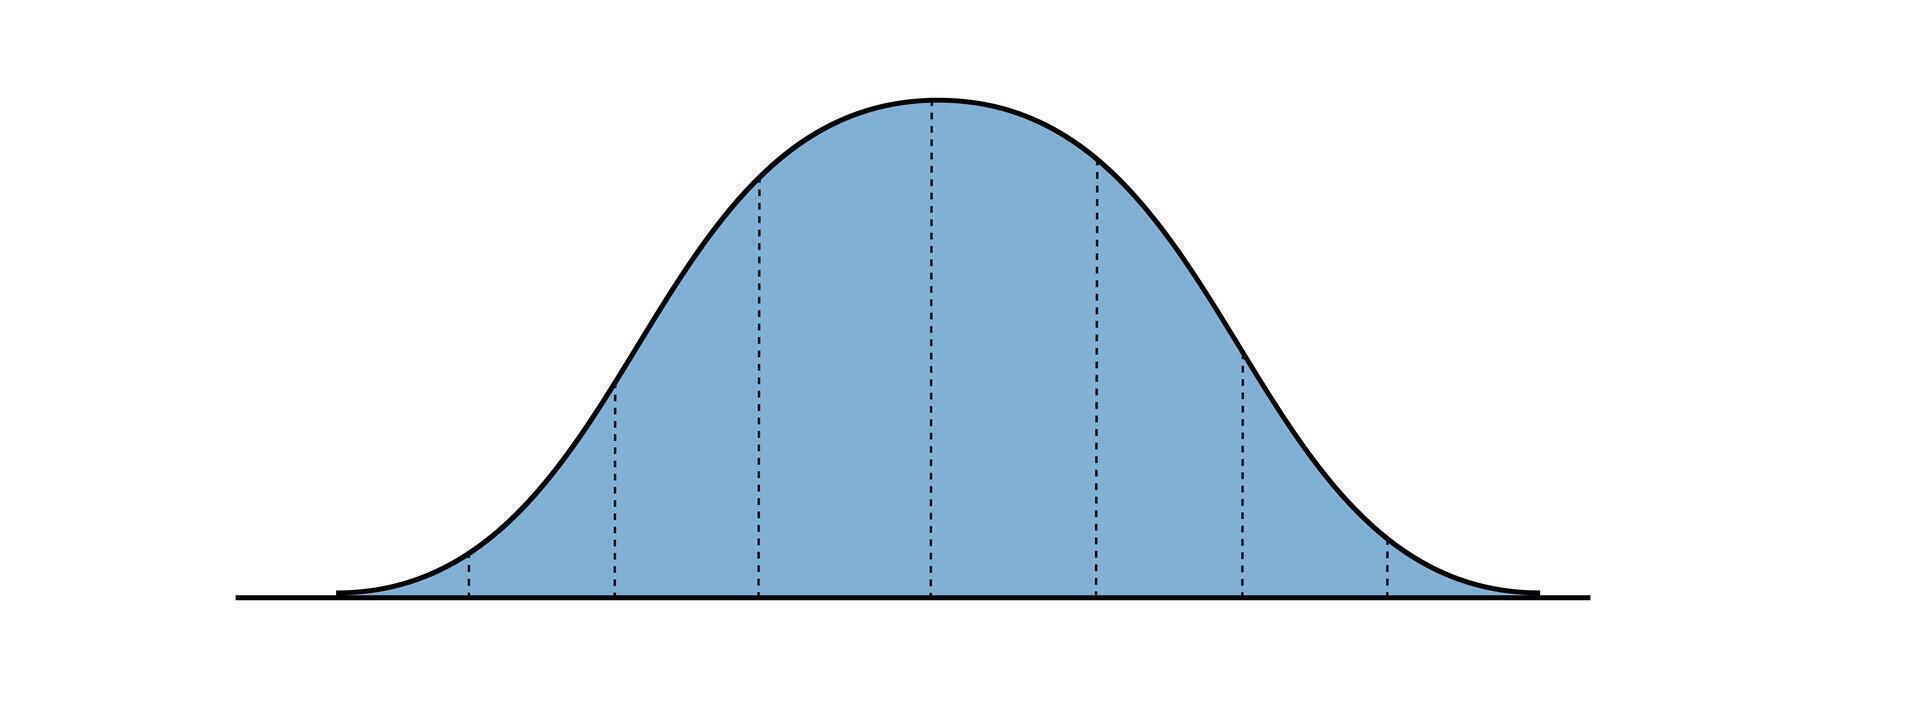 Glocke Kurve Vorlage mit 8 Säulen. Gauß oder normal Verteilung Graph. Wahrscheinlichkeit Theorie Konzept. Layout zum Statistiken oder logistisch Daten isoliert auf Weiß Hintergrund. vektor